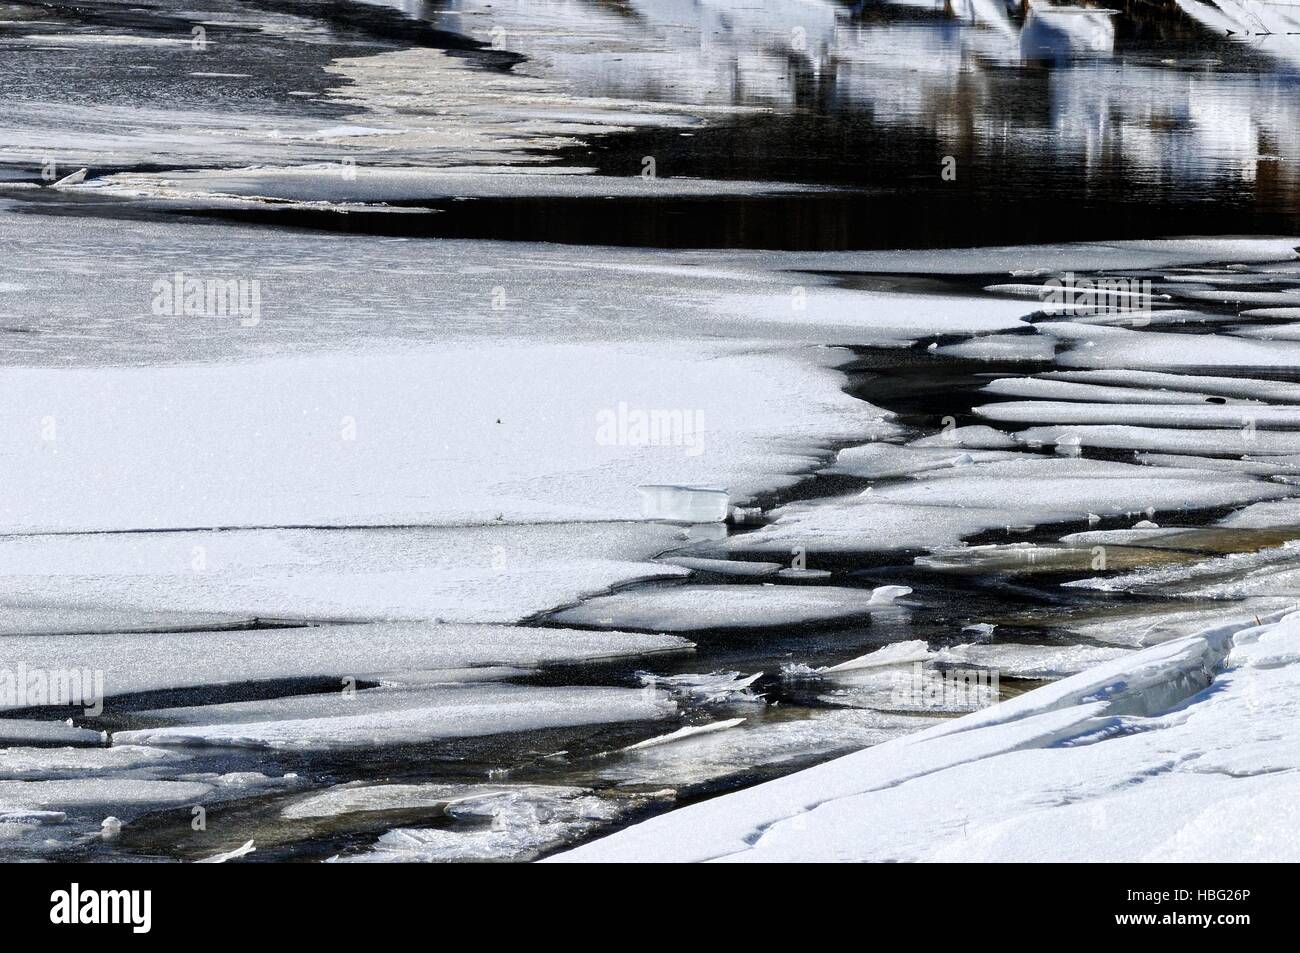 Plaques de glace flottantes flottant dans l'eau Banque D'Images